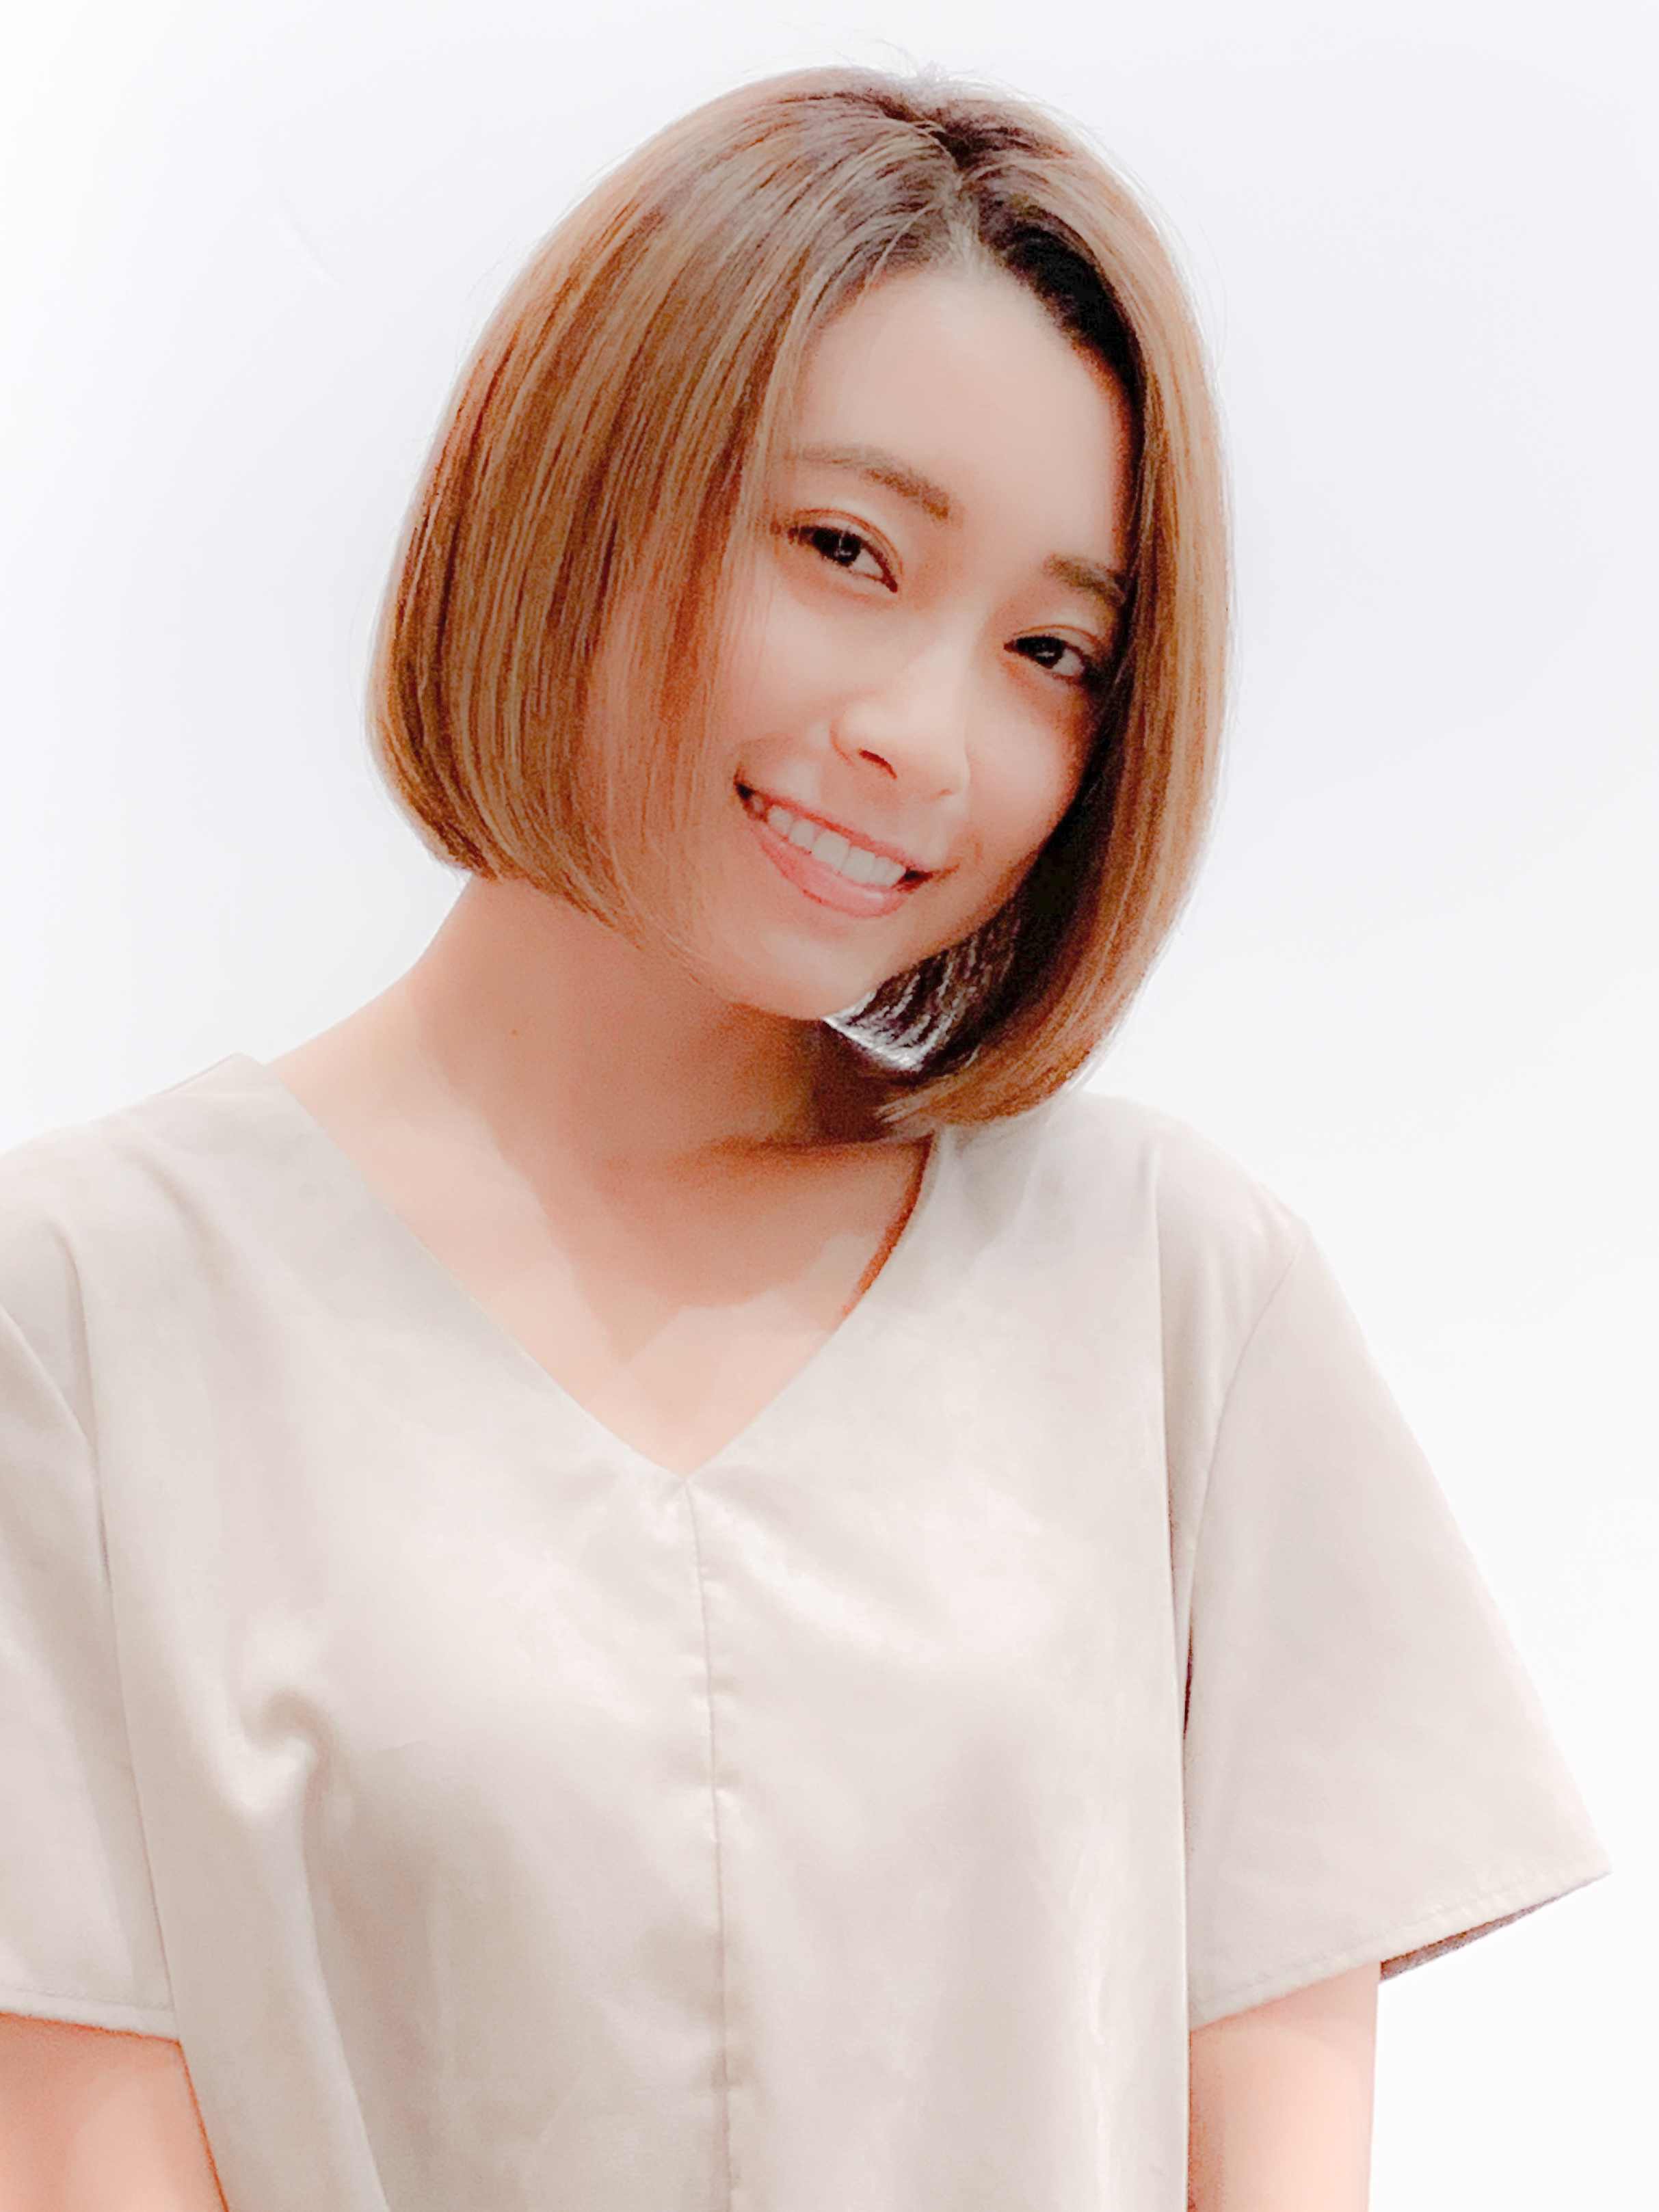 21年秋 大人ボブを 前髪あり 前髪なし の変化で 今の自分に似合う髪型に 似合わせカットが上手い東京の美容師 美容室minx銀座 蛭田のブログ